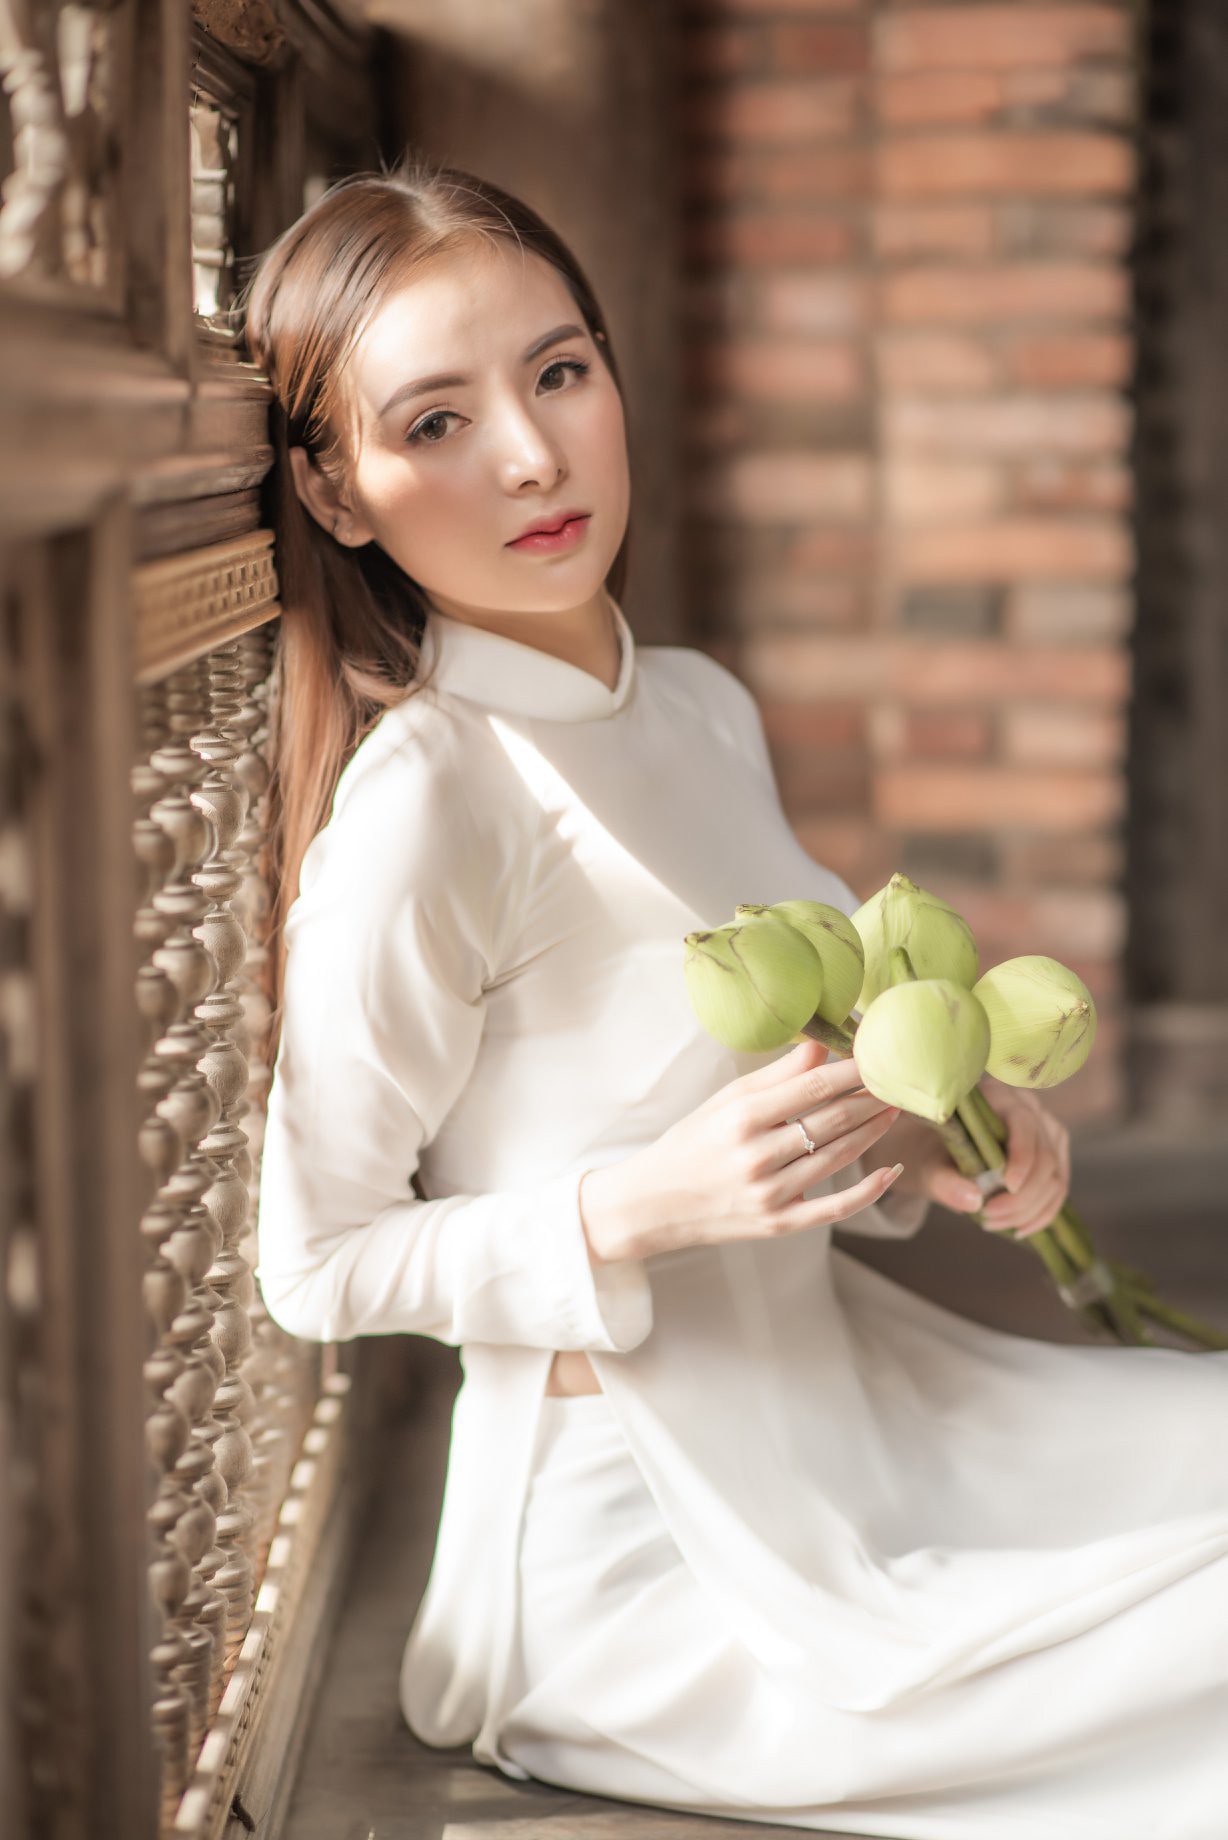 Áo Dài Trắng là chiếc đầm truyền thống mang đậm nét đẹp Á Đông, cùng họa tiết phù hợp với sắc trắng tinh khôi, tạo nên sức cuốn hút vô cùng đặc biệt. Bấm vào hình ảnh và khám phá bí quyết làm nên sự cuốn hút ấy.